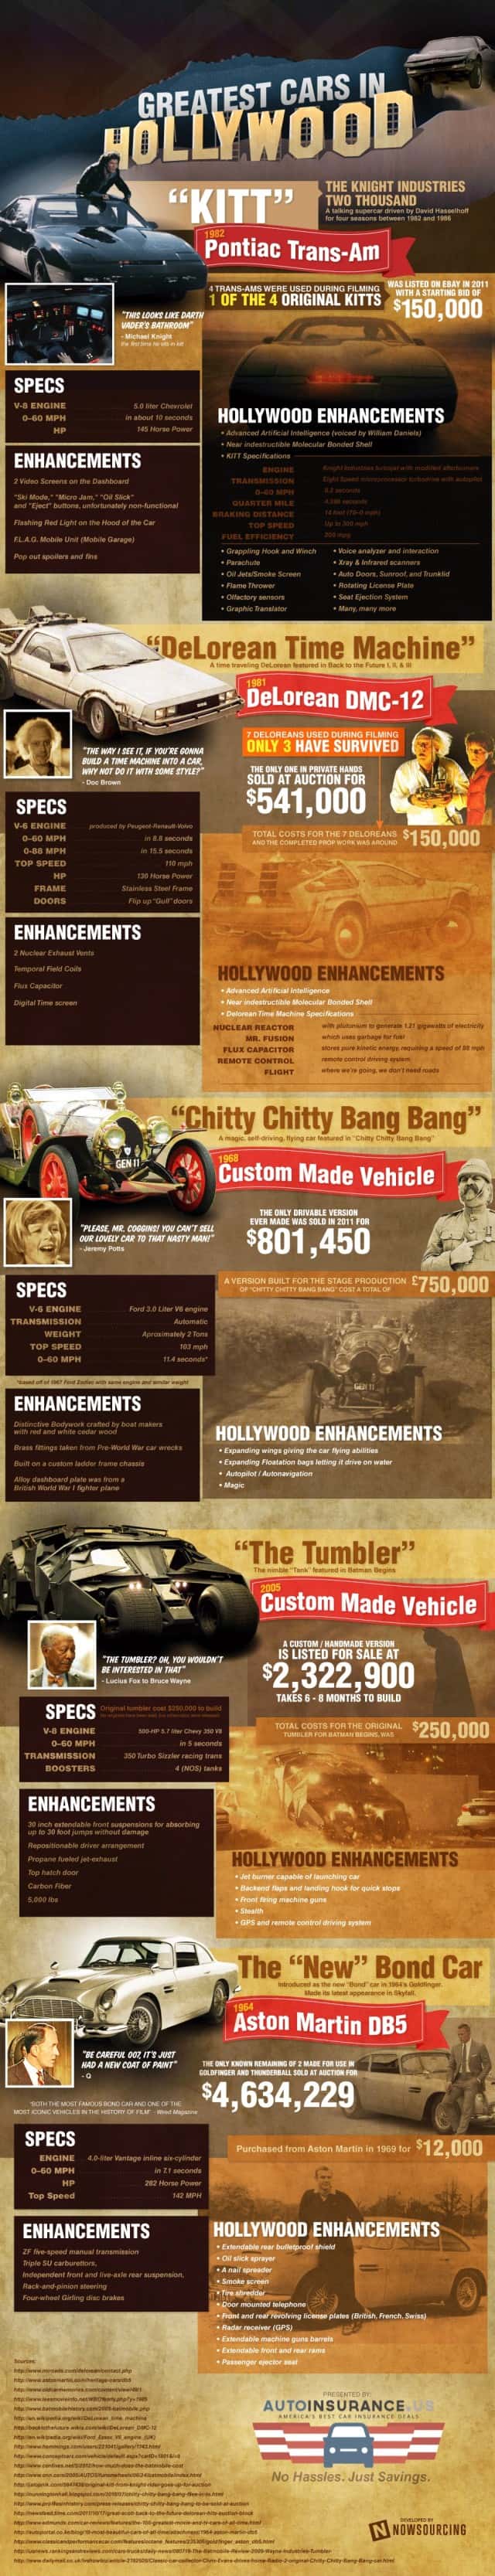 Greatest Hollywood Cars